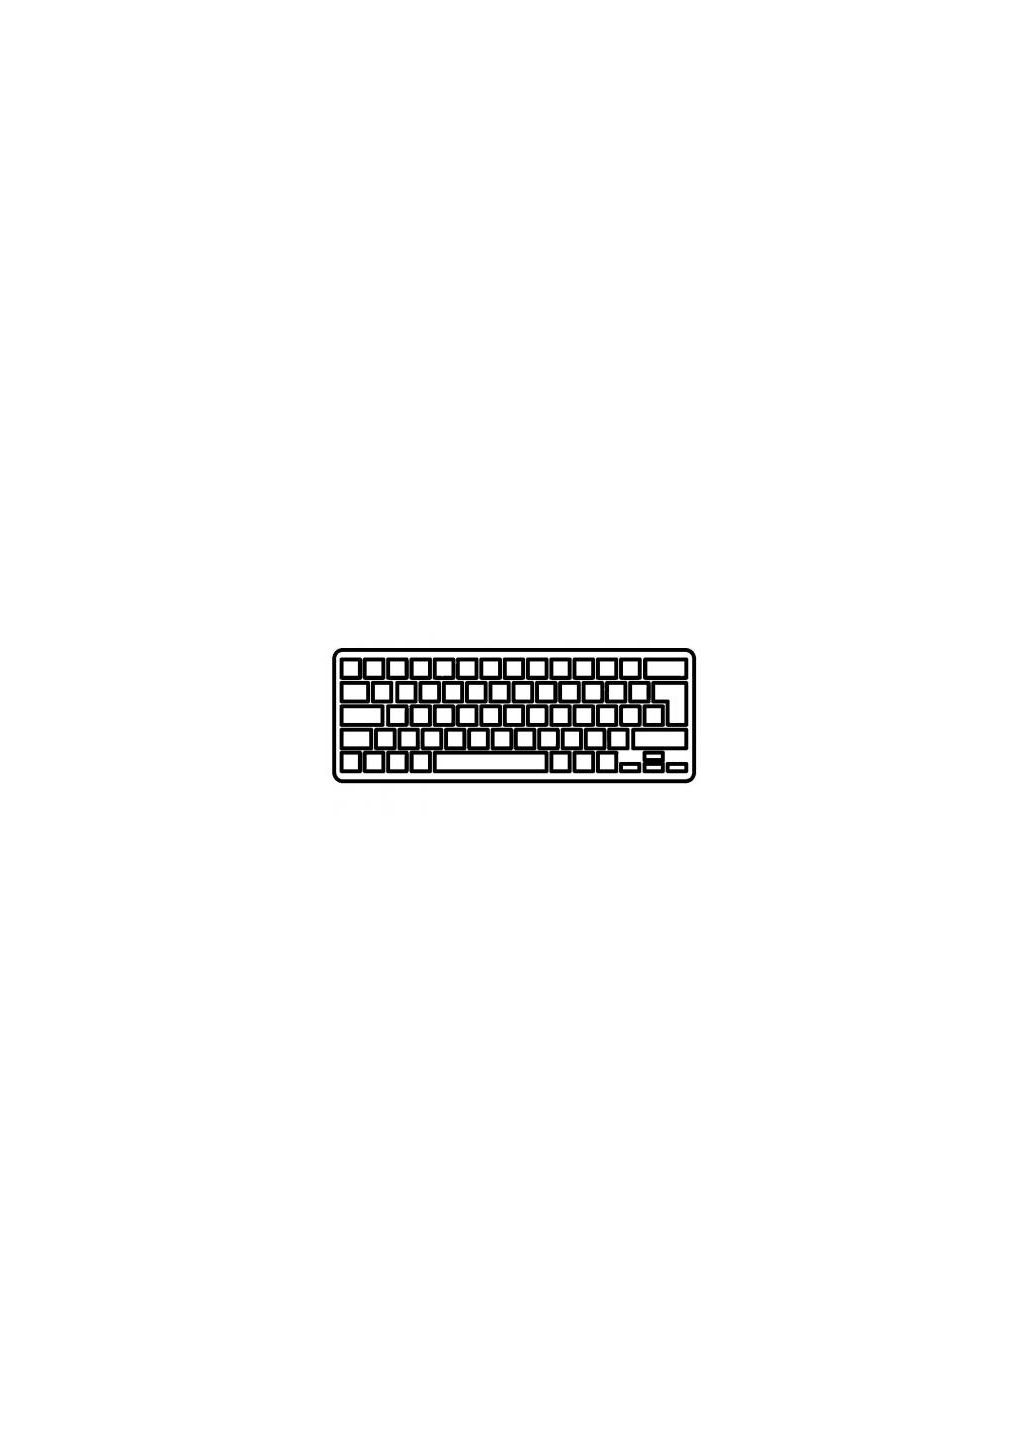 Клавиатура ноутбука Pavilion dm41000/dv5-2000 белая UA (A43396) HP pavilion dm4-1000/dv5-2000 белая ua (276707684)